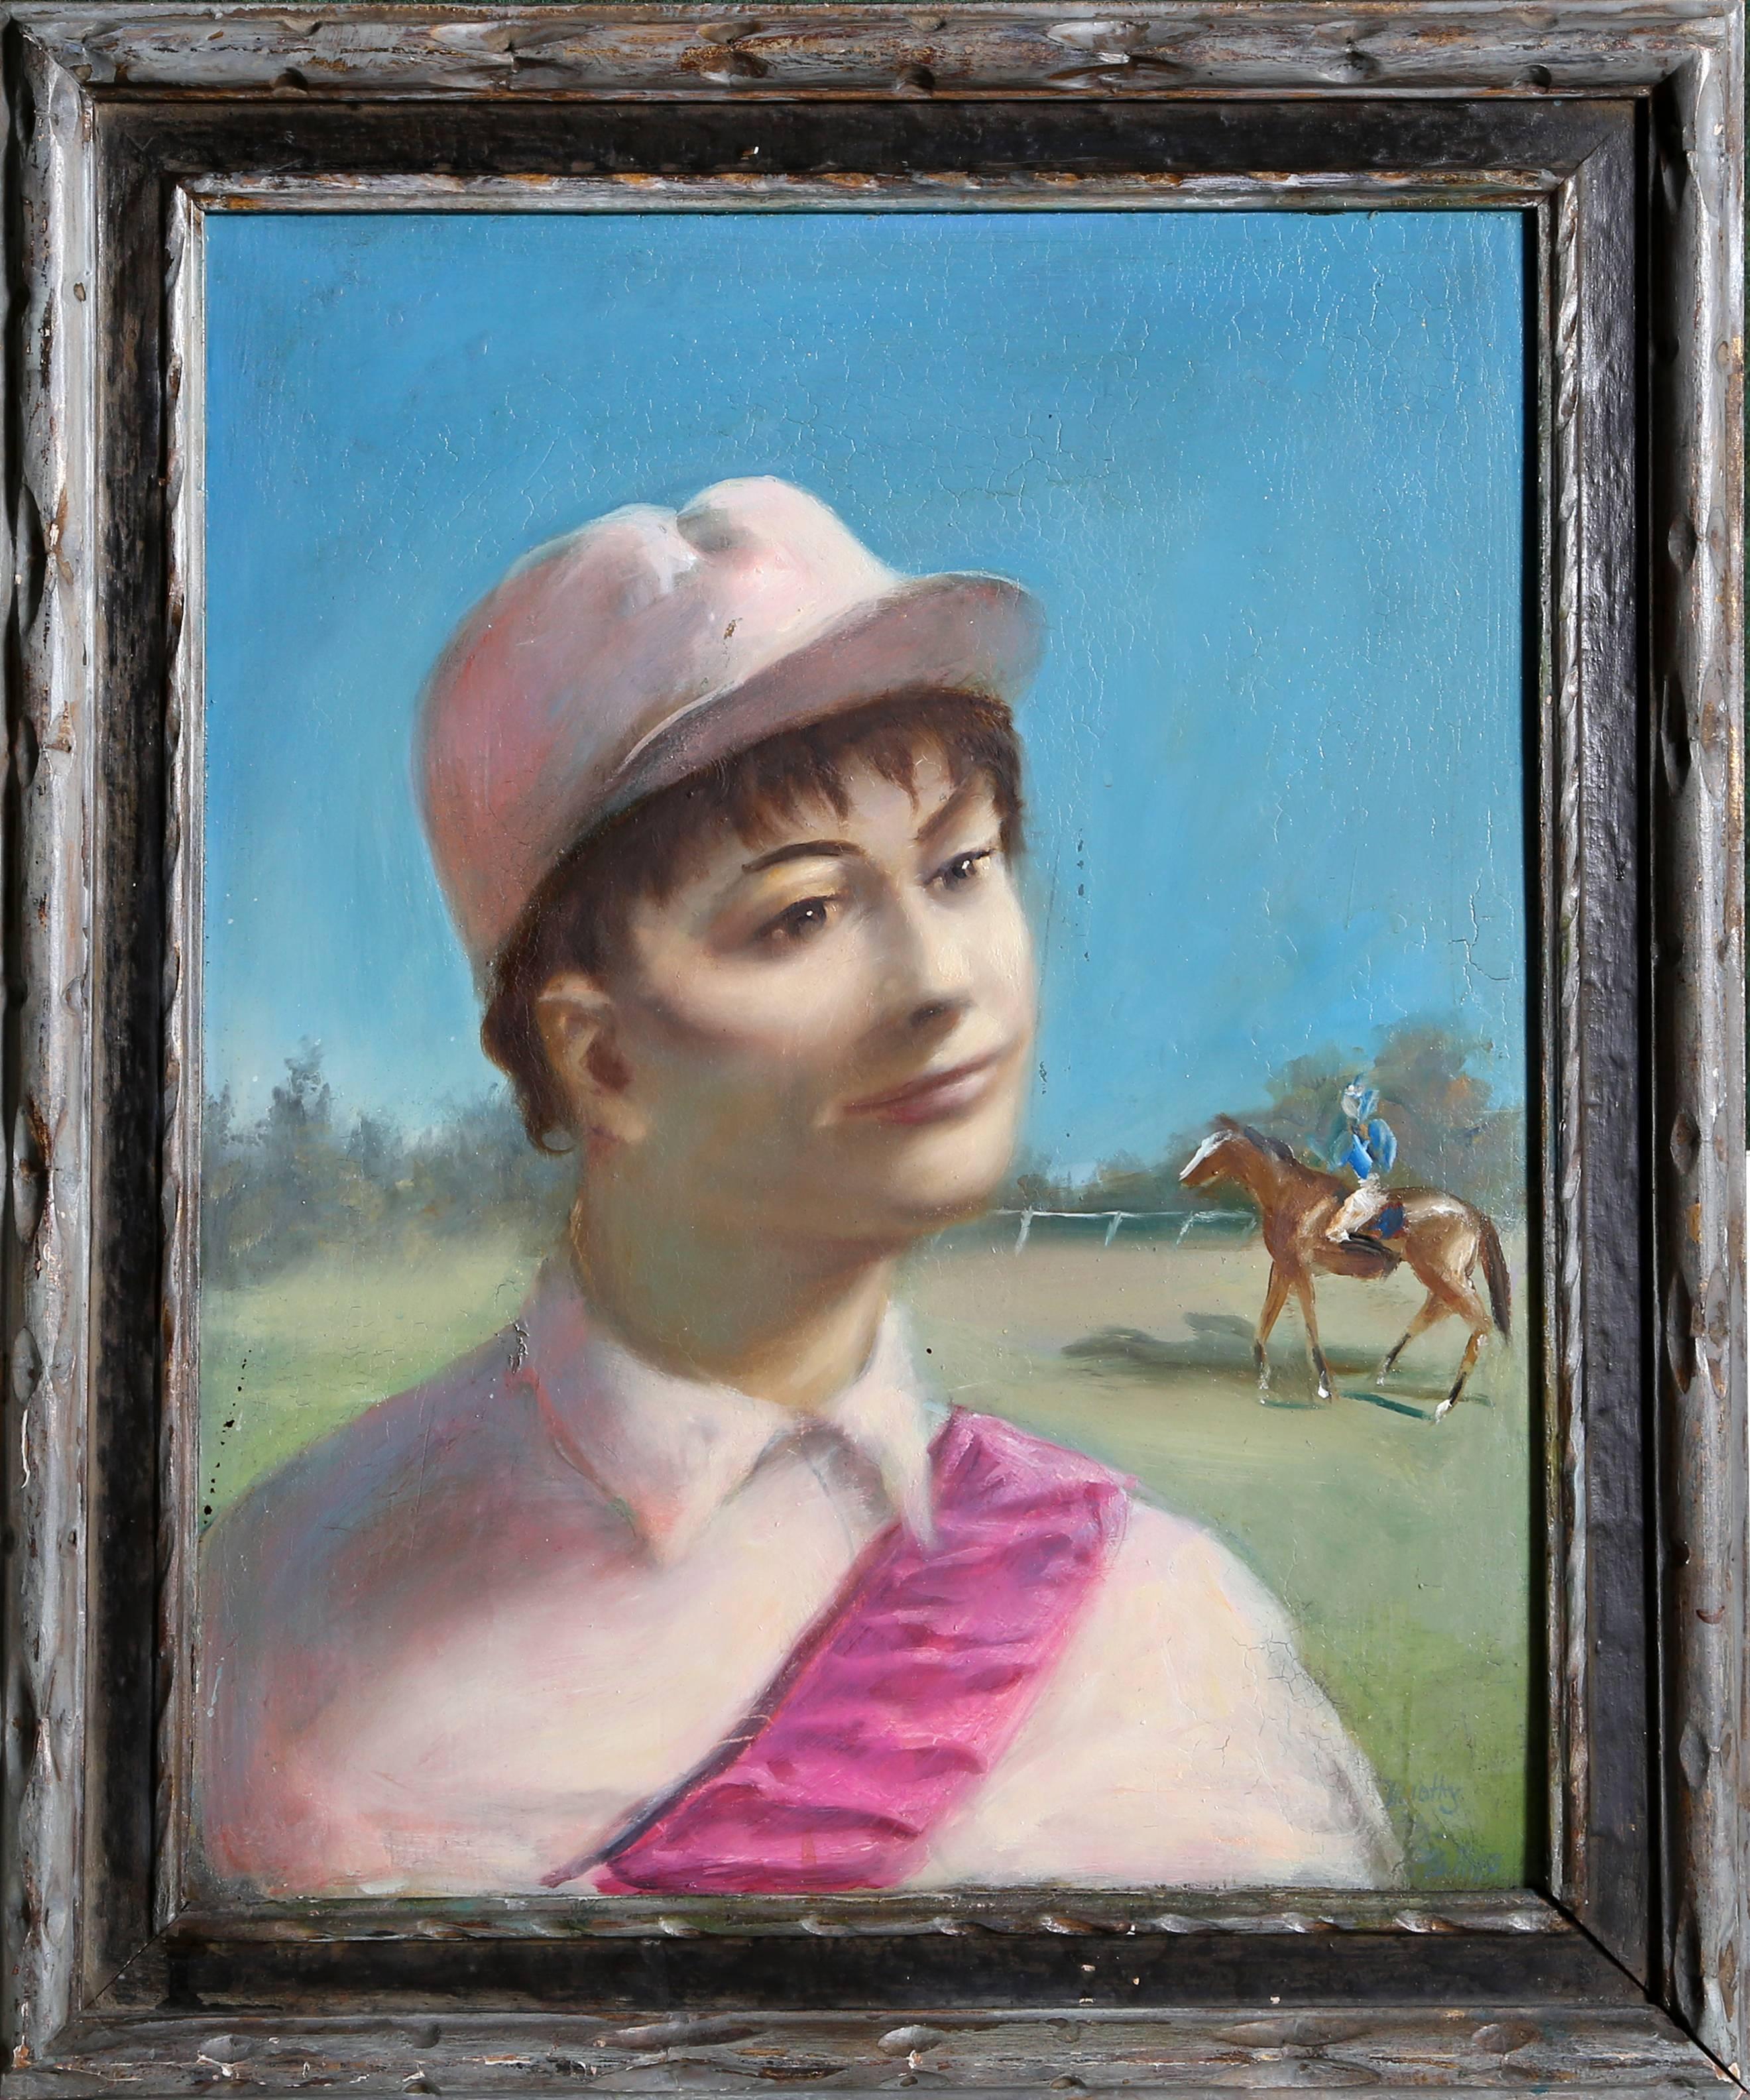 Timothy Phillips, "Racetrack Hopeful (Jockey Portrait), " Oil on Board, 1975